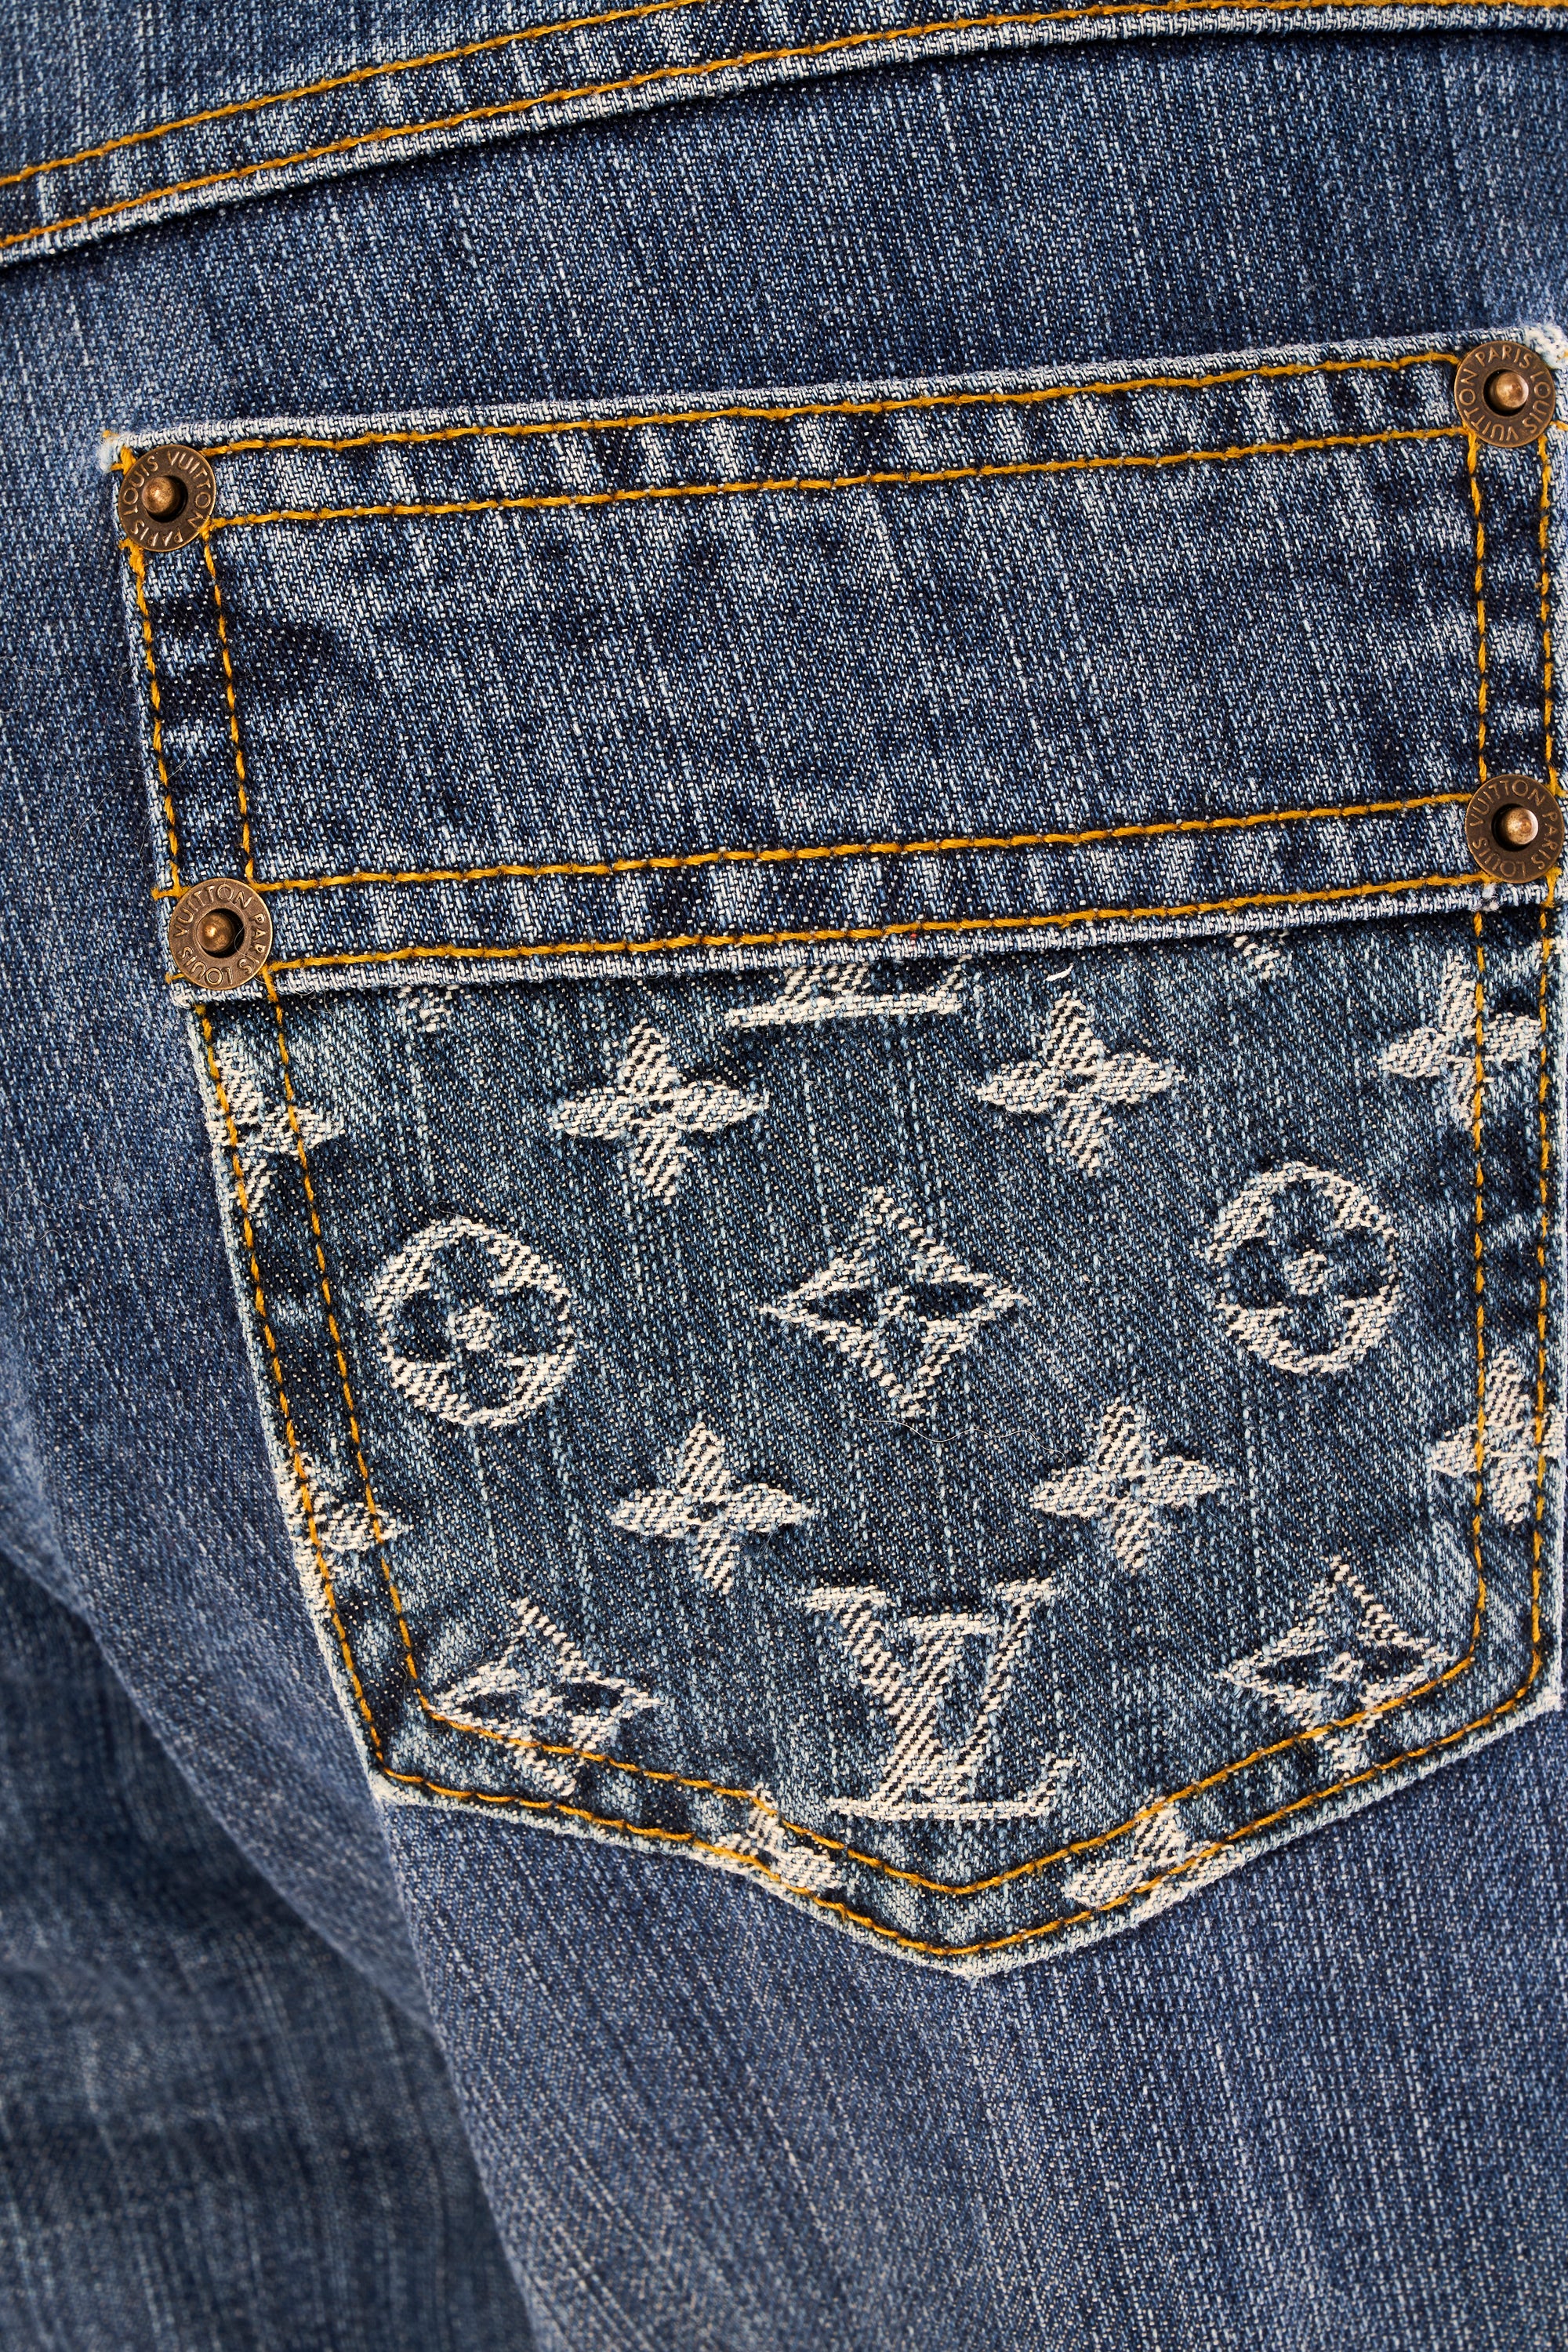 Louis Vuitton Monogram Low Rise Jeans 38/4